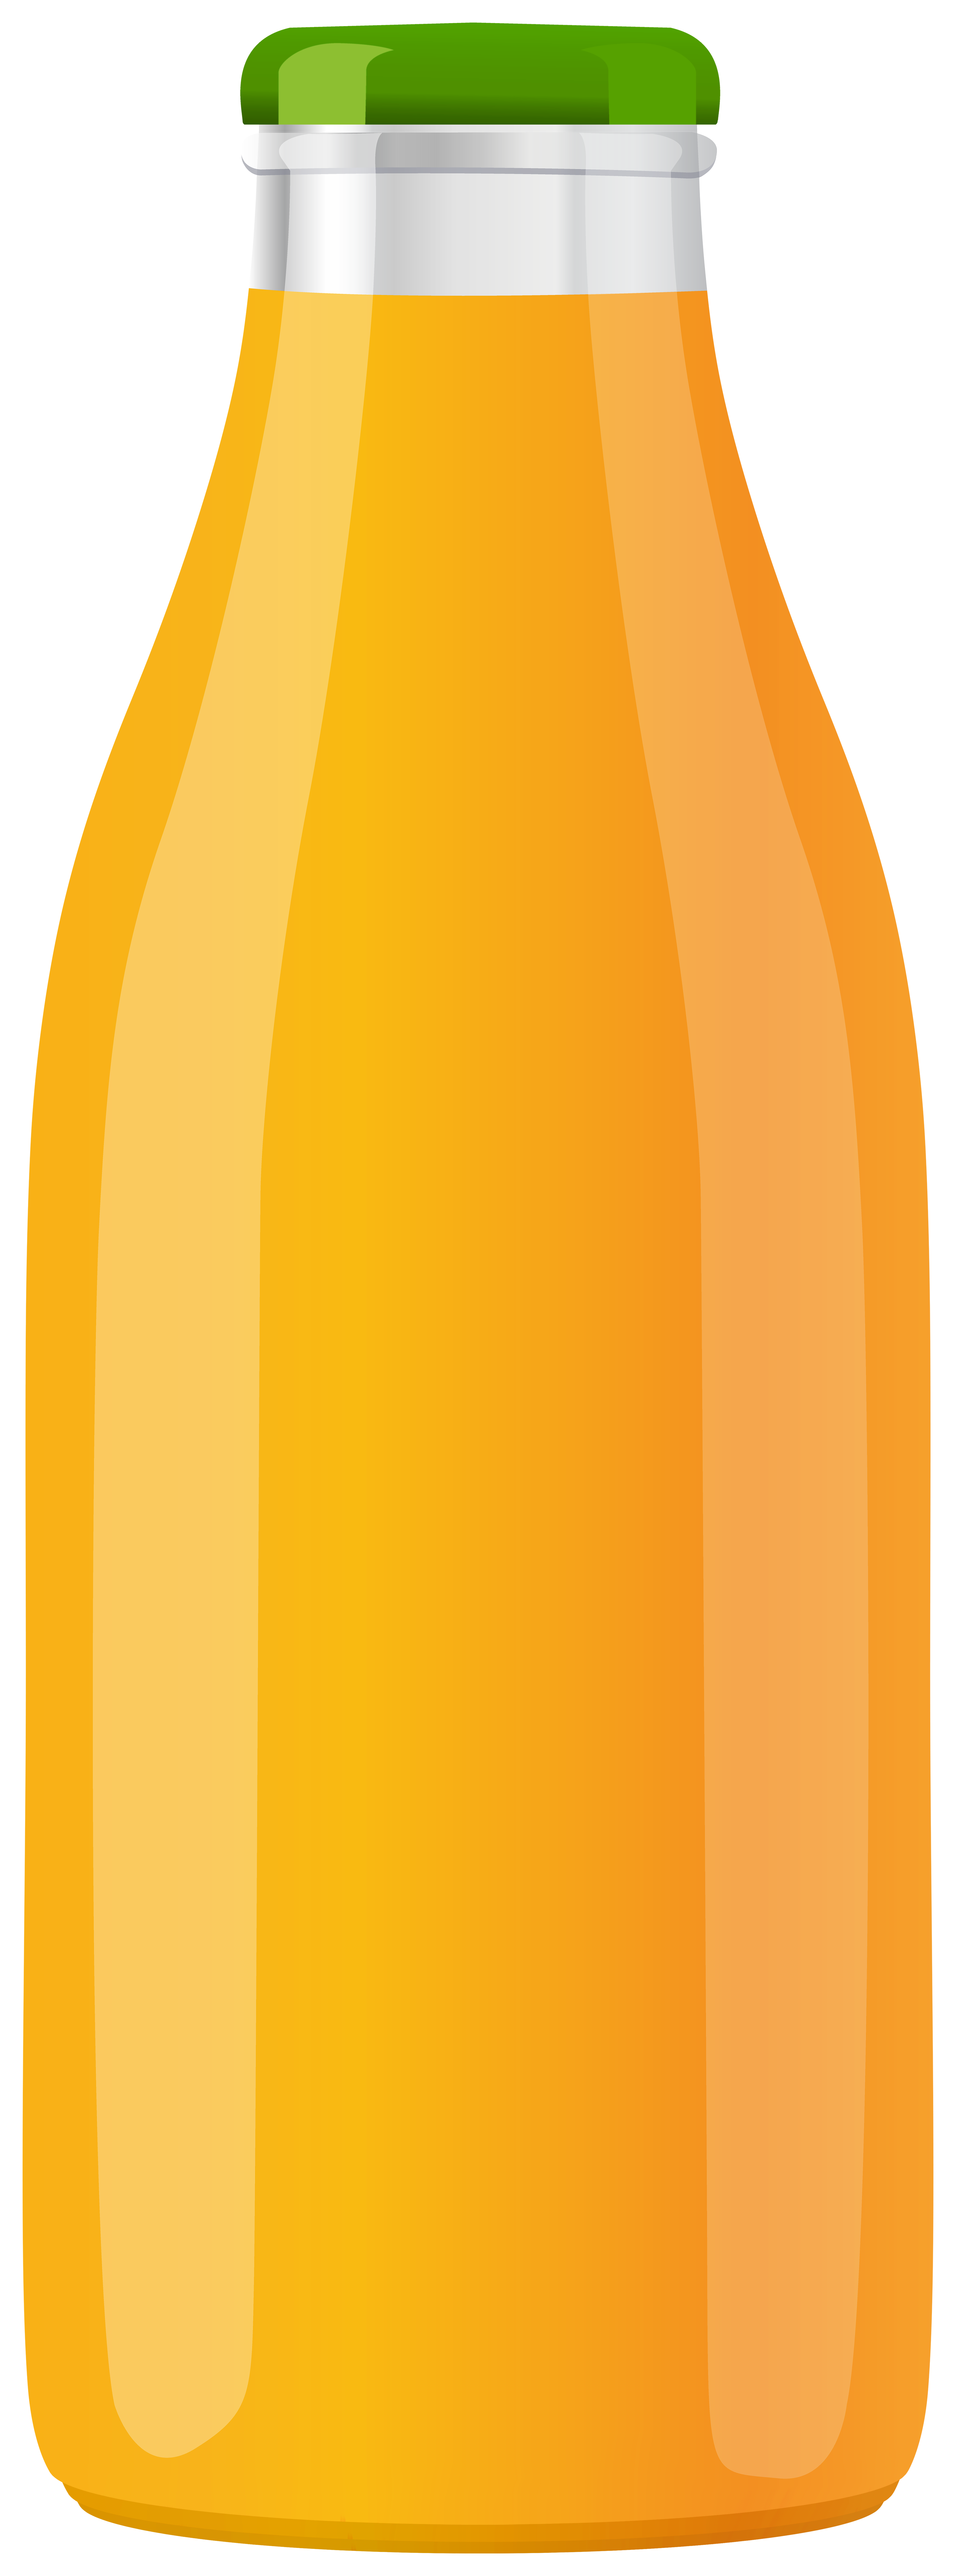 https://pics.clipartpng.com/Orange_Juice_Bottle_PNG_Clip_Art-3161.png